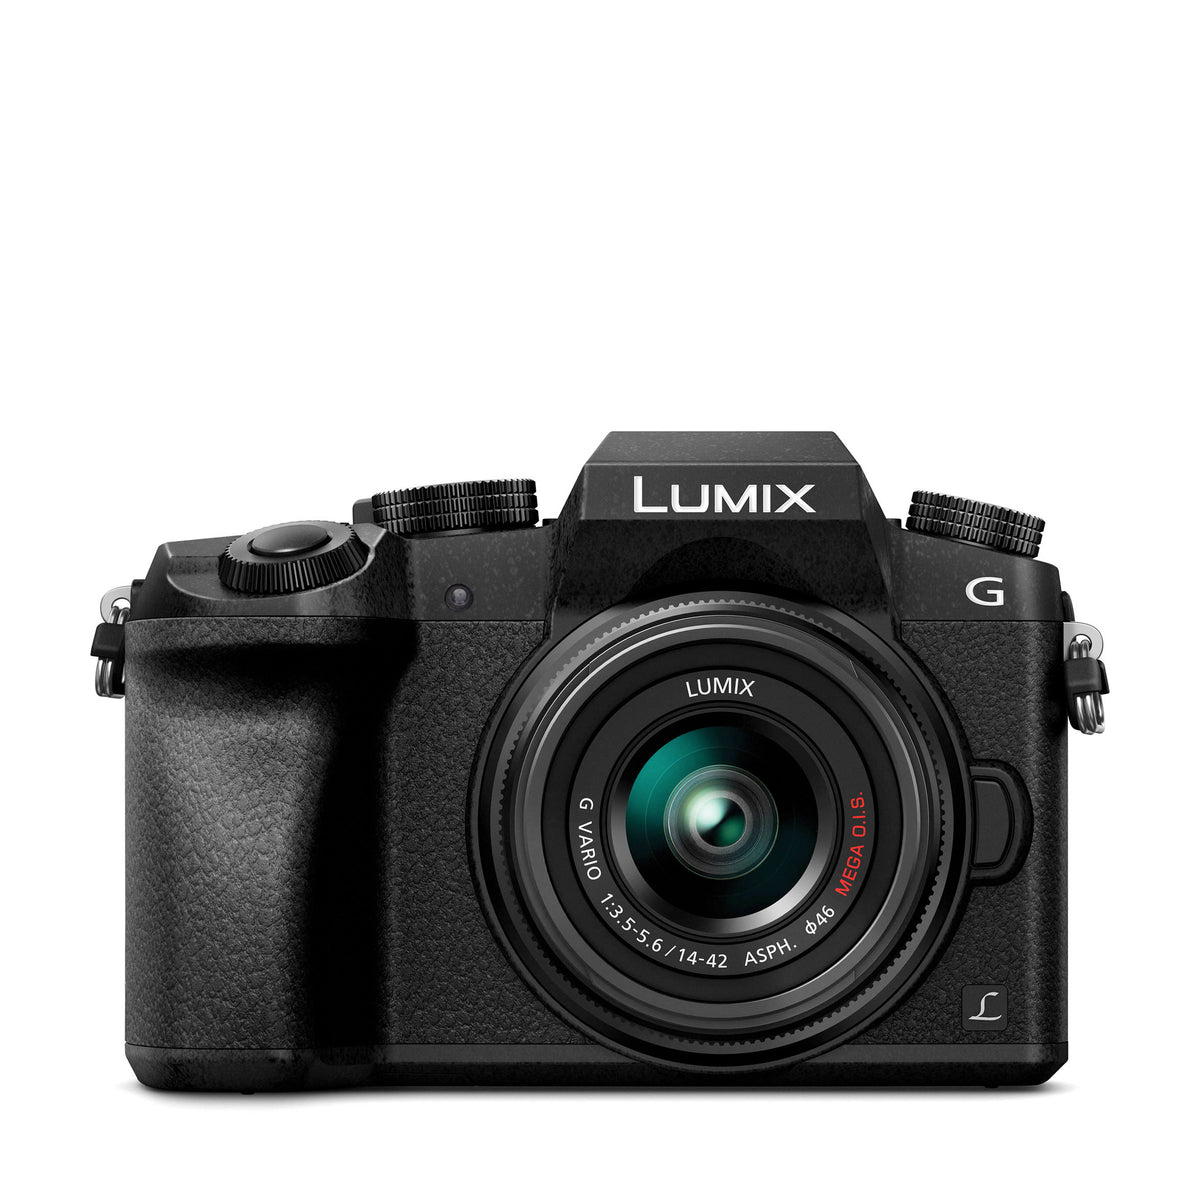 Panasonic Lumix G7 Mirrorless Camera with 14-42mm Lens DMC-G7KS